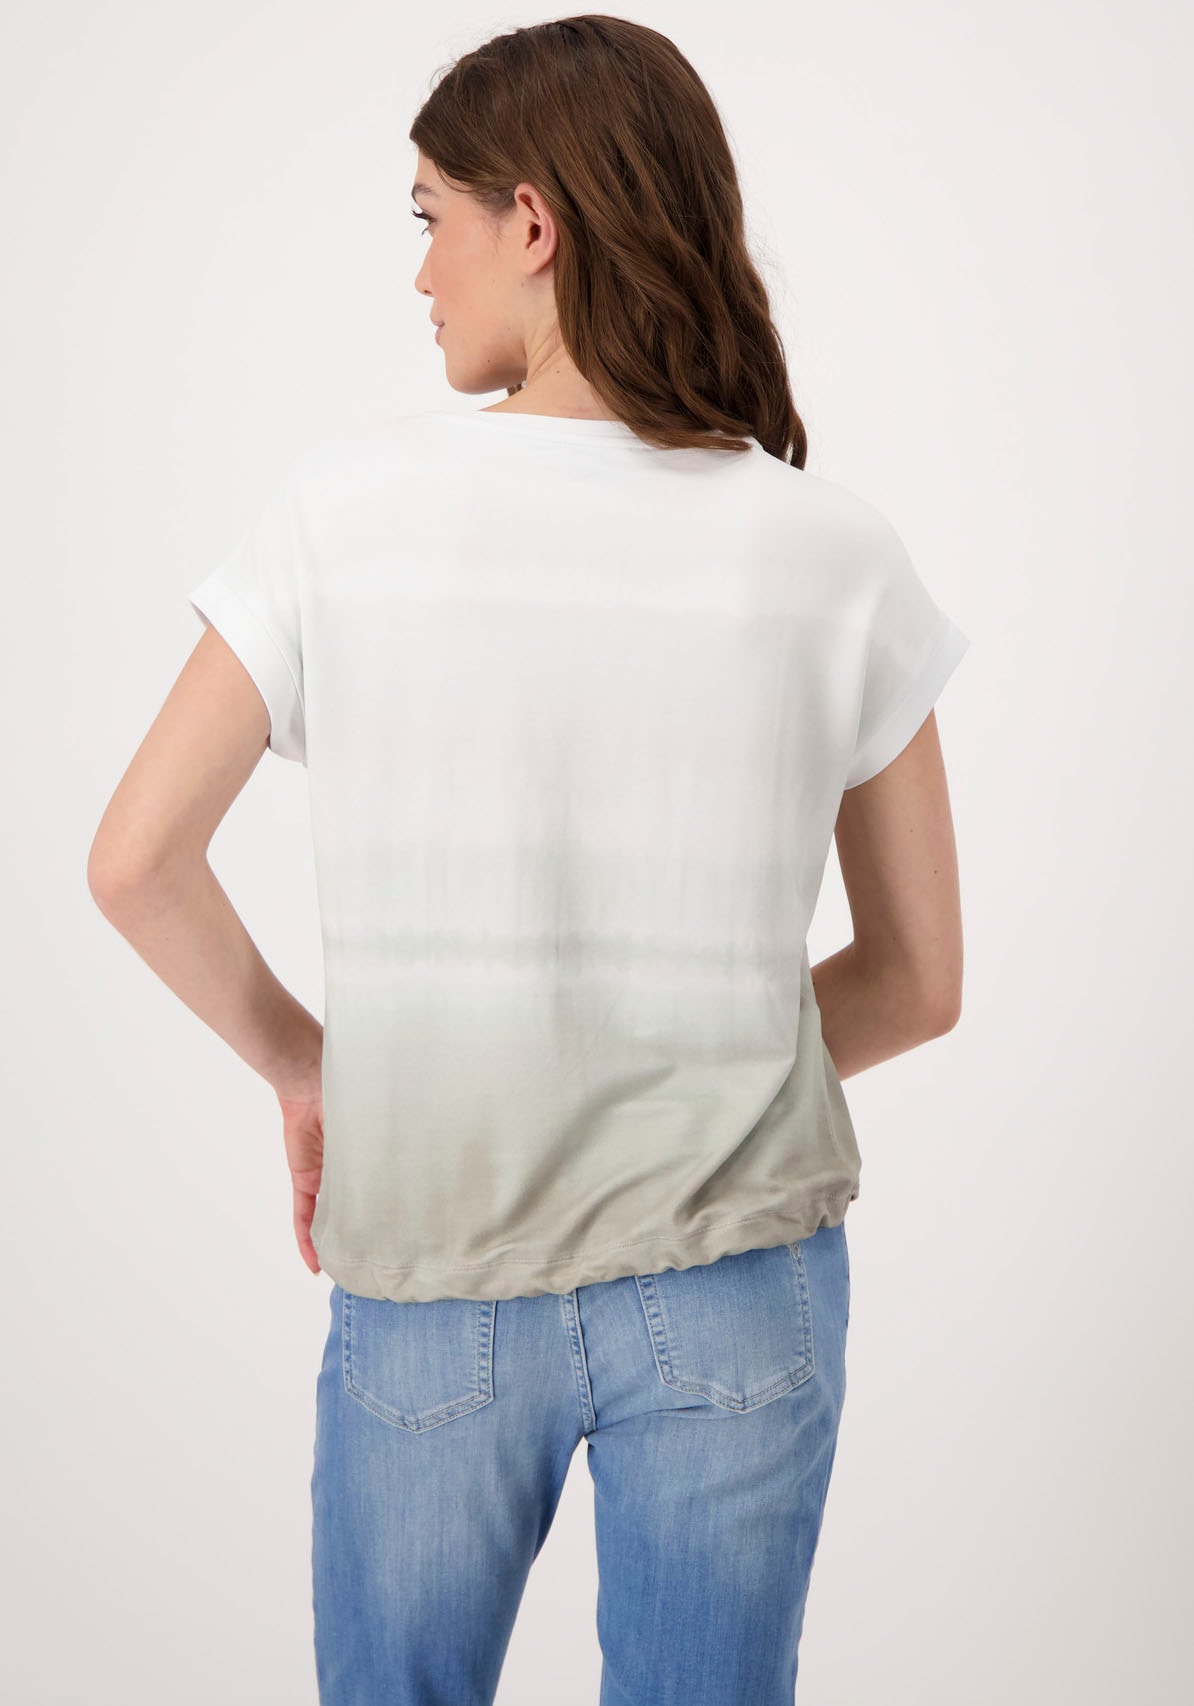 Monari Rundhalsshirt, mit Folienglanzdruck Farbverlauf kaufen und im OTTO Online Shop